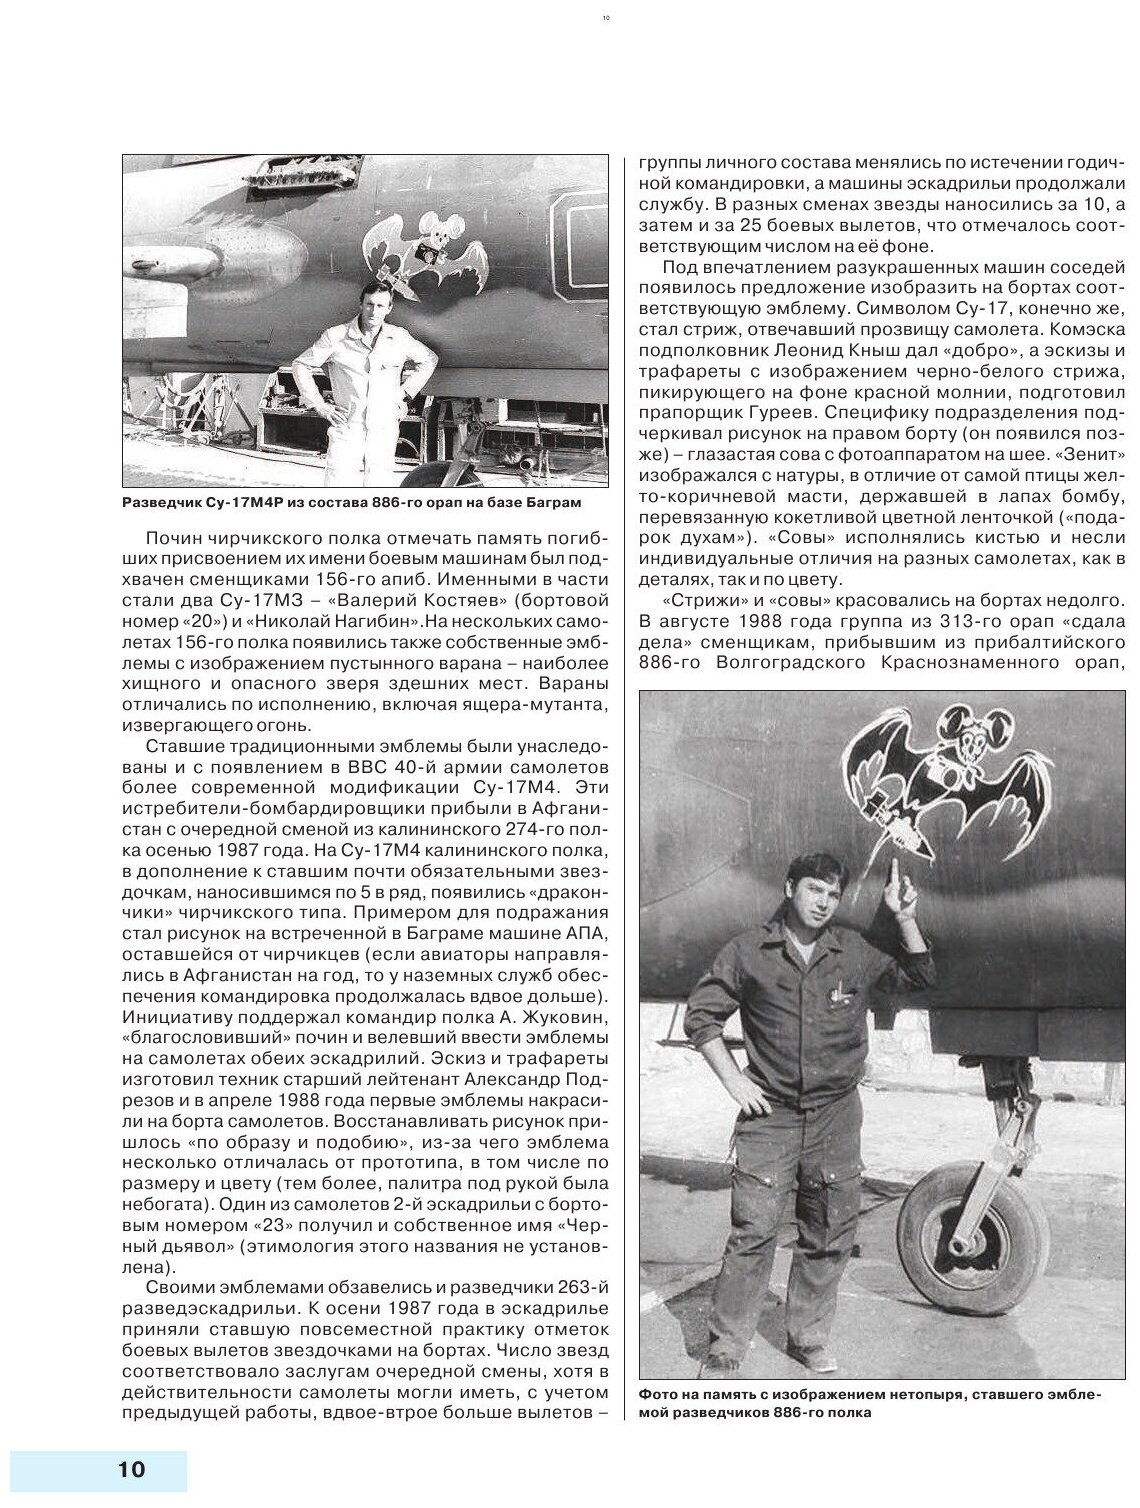 Камуфляж и бортовые эмблемы авиатехники советских ВВС в афганской кампании - фото №13